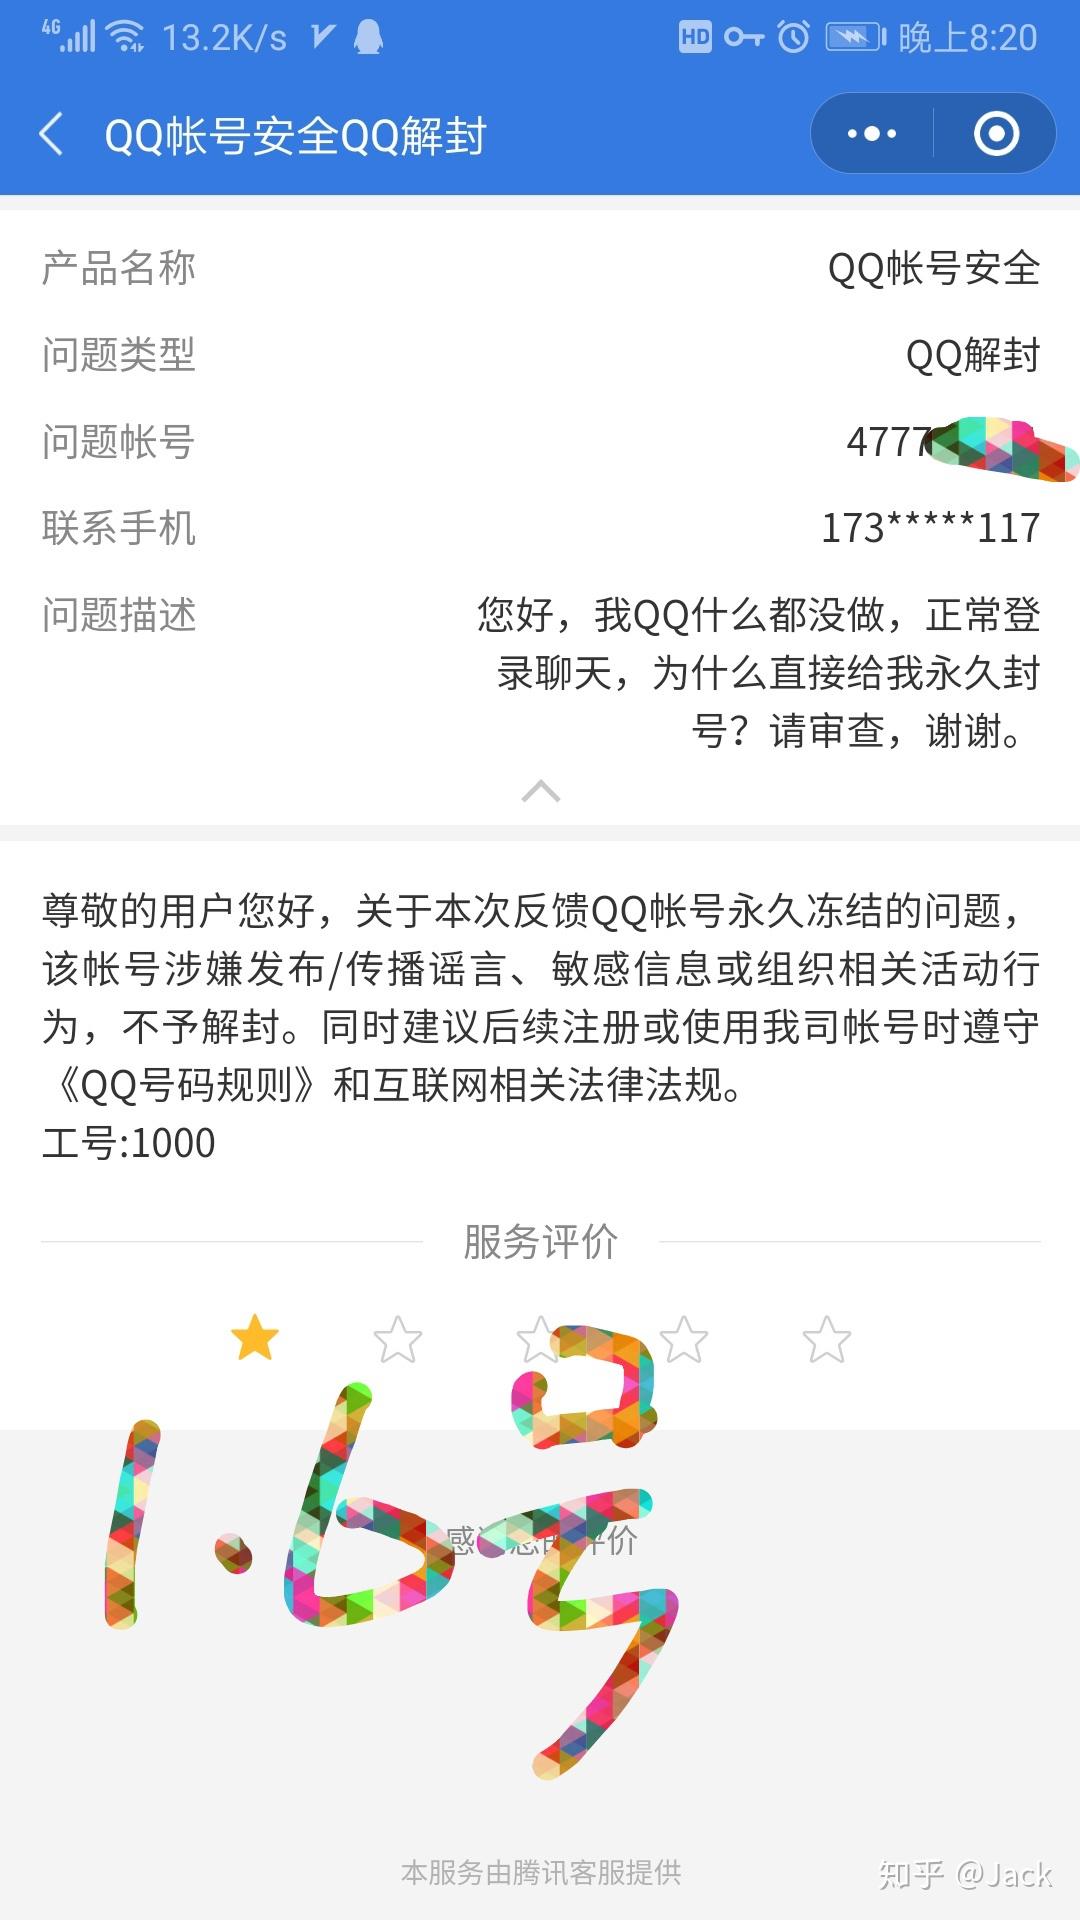 qq账户冻结永久封号解冻交流记录 (2020-02-05已解封一个月)